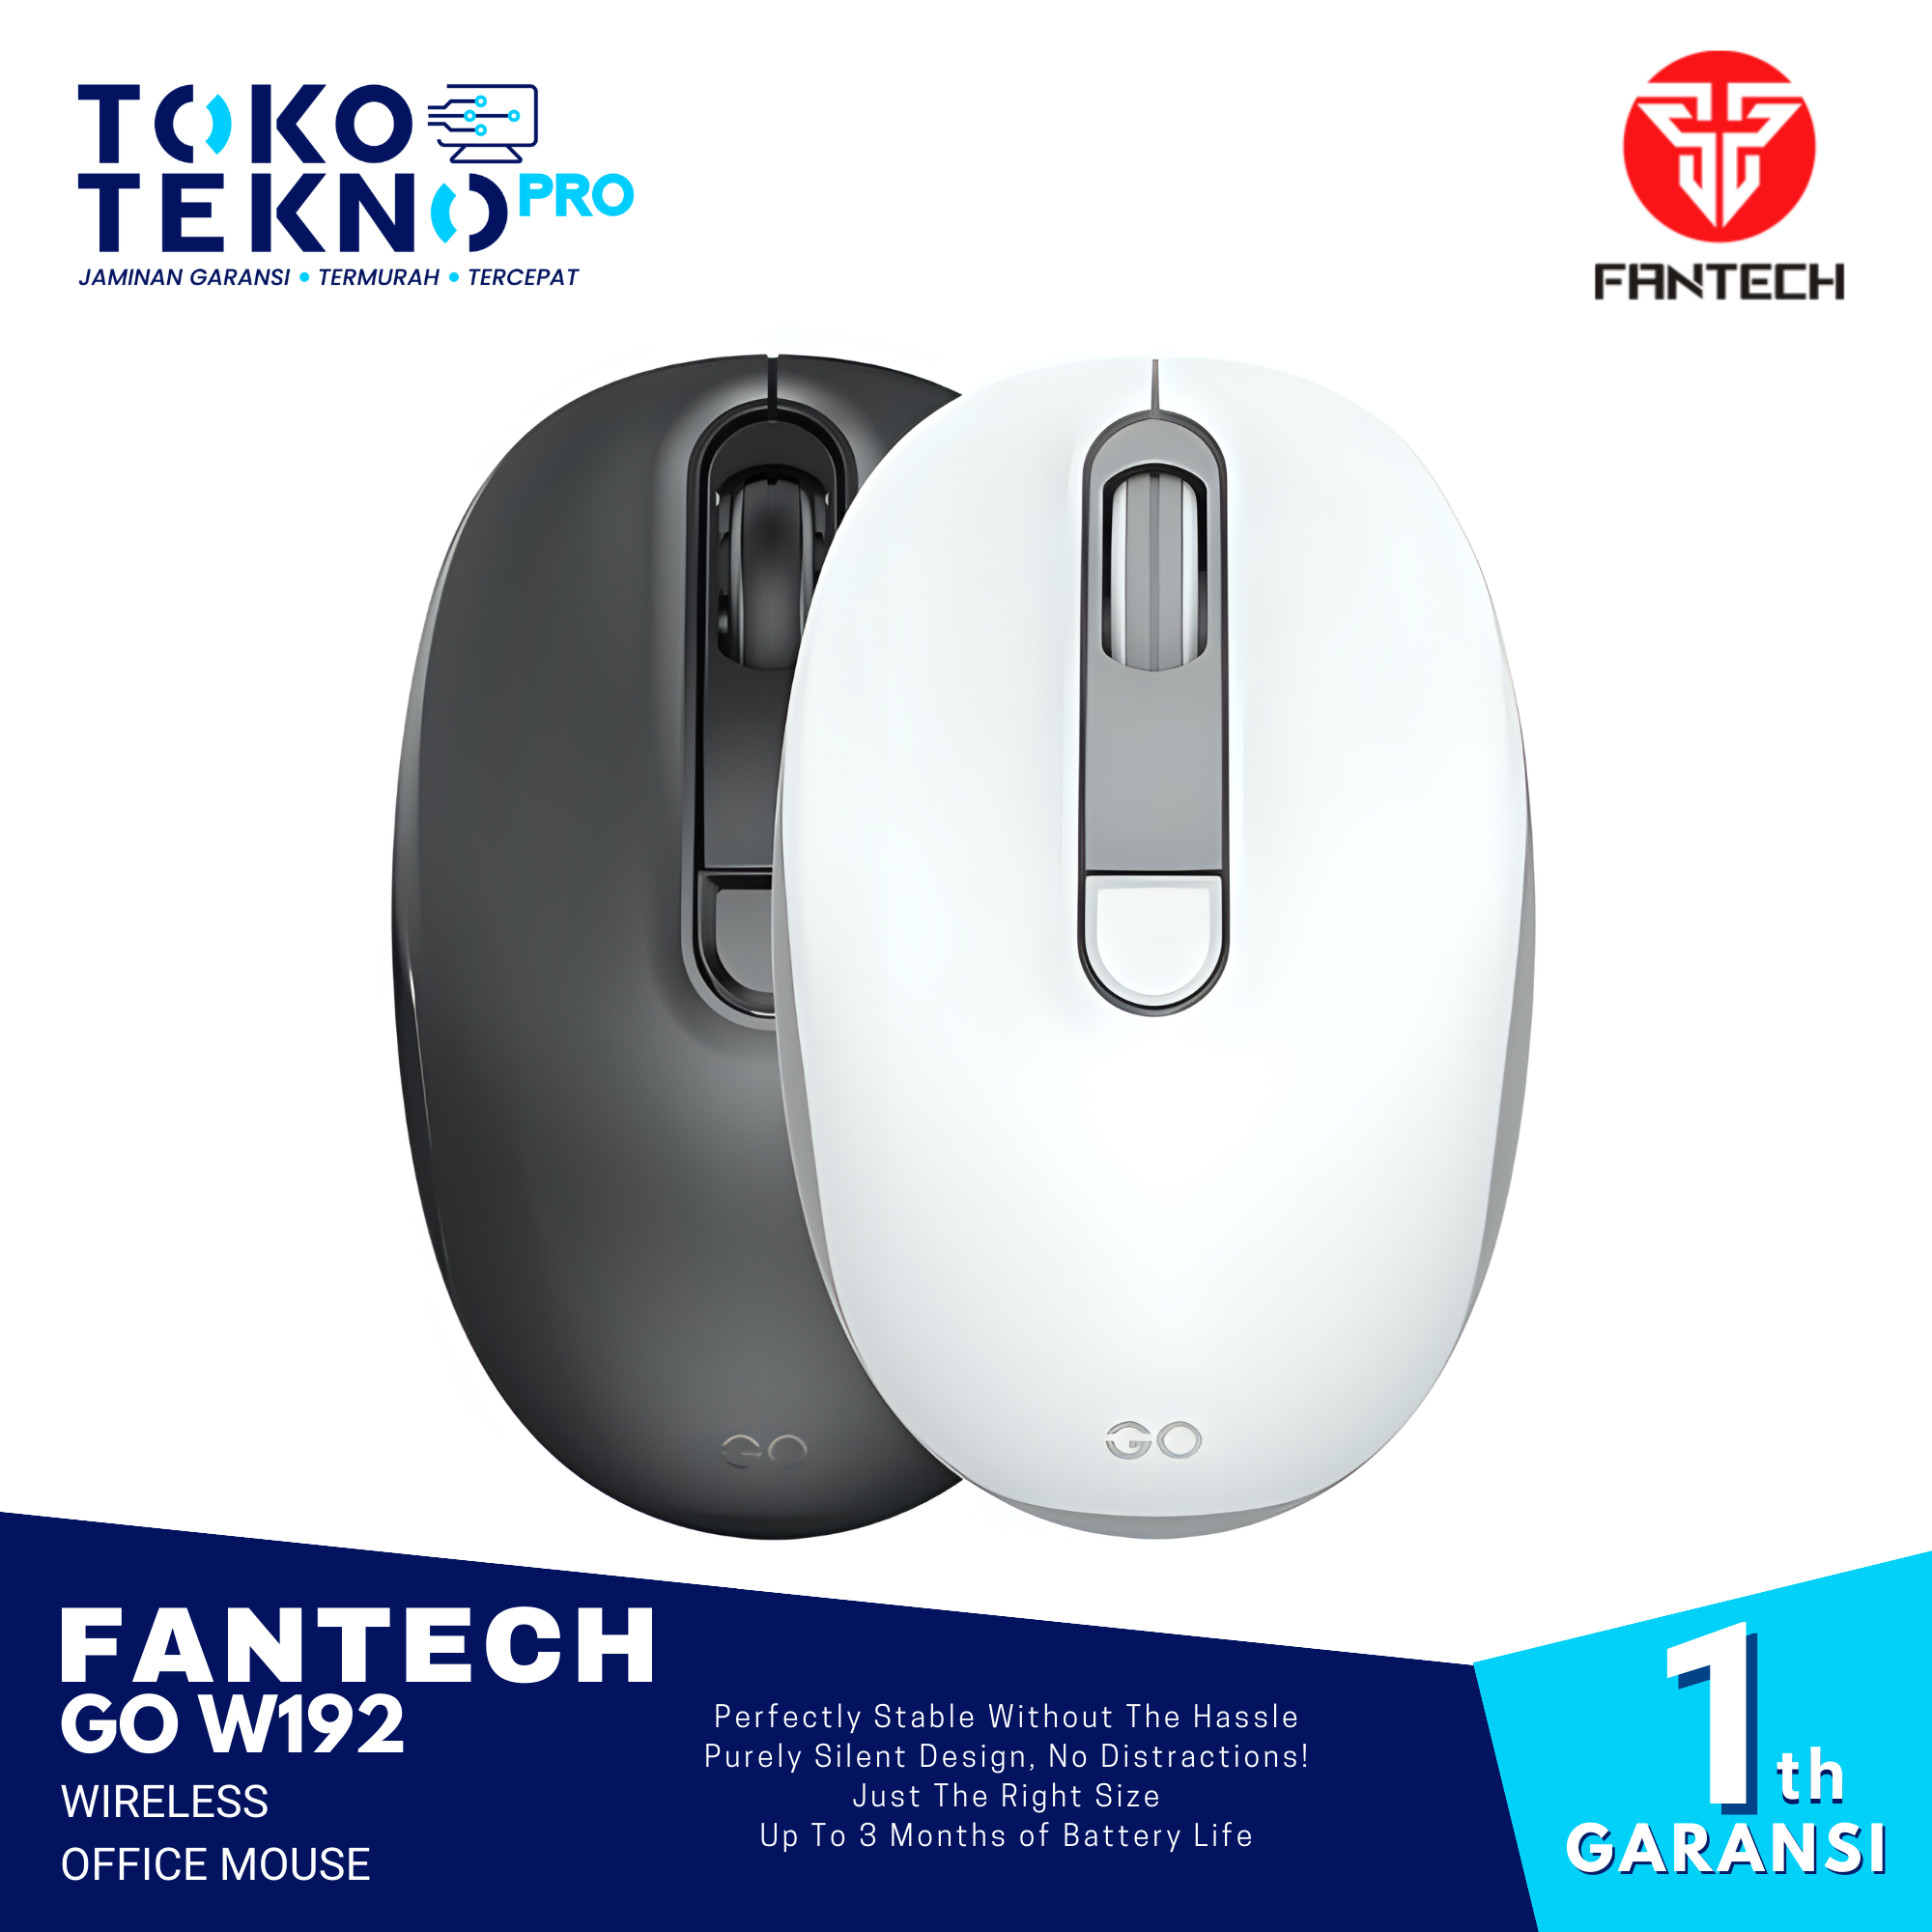 Fantech GO W192 Wireless Office Mouse